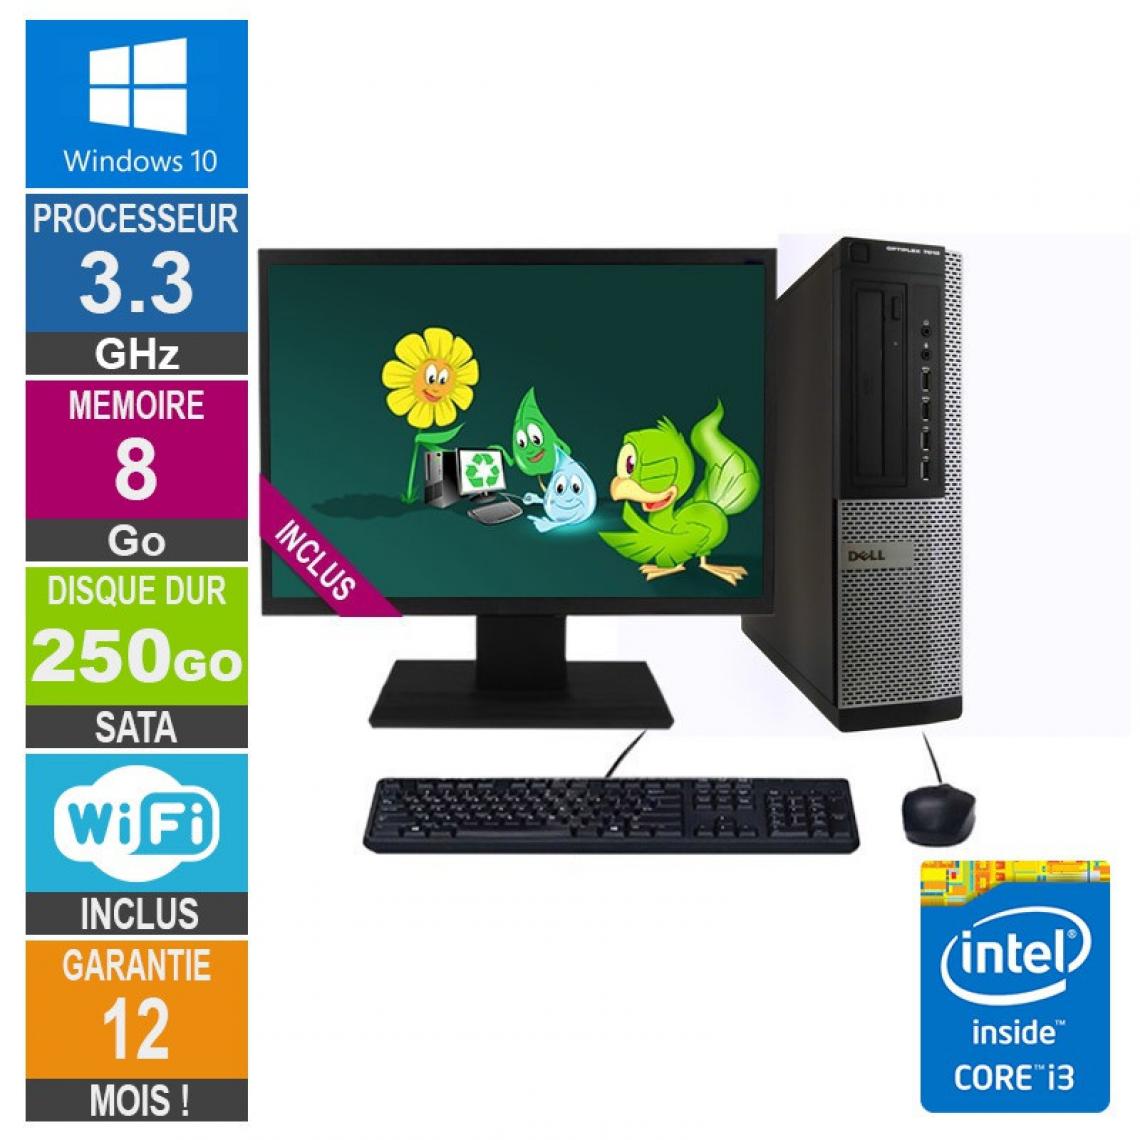 Dell - PC Dell 7010 DT Core i3-3220 3.30GHz 8Go/250Go Wifi W10 + Ecran 19 - PC Fixe